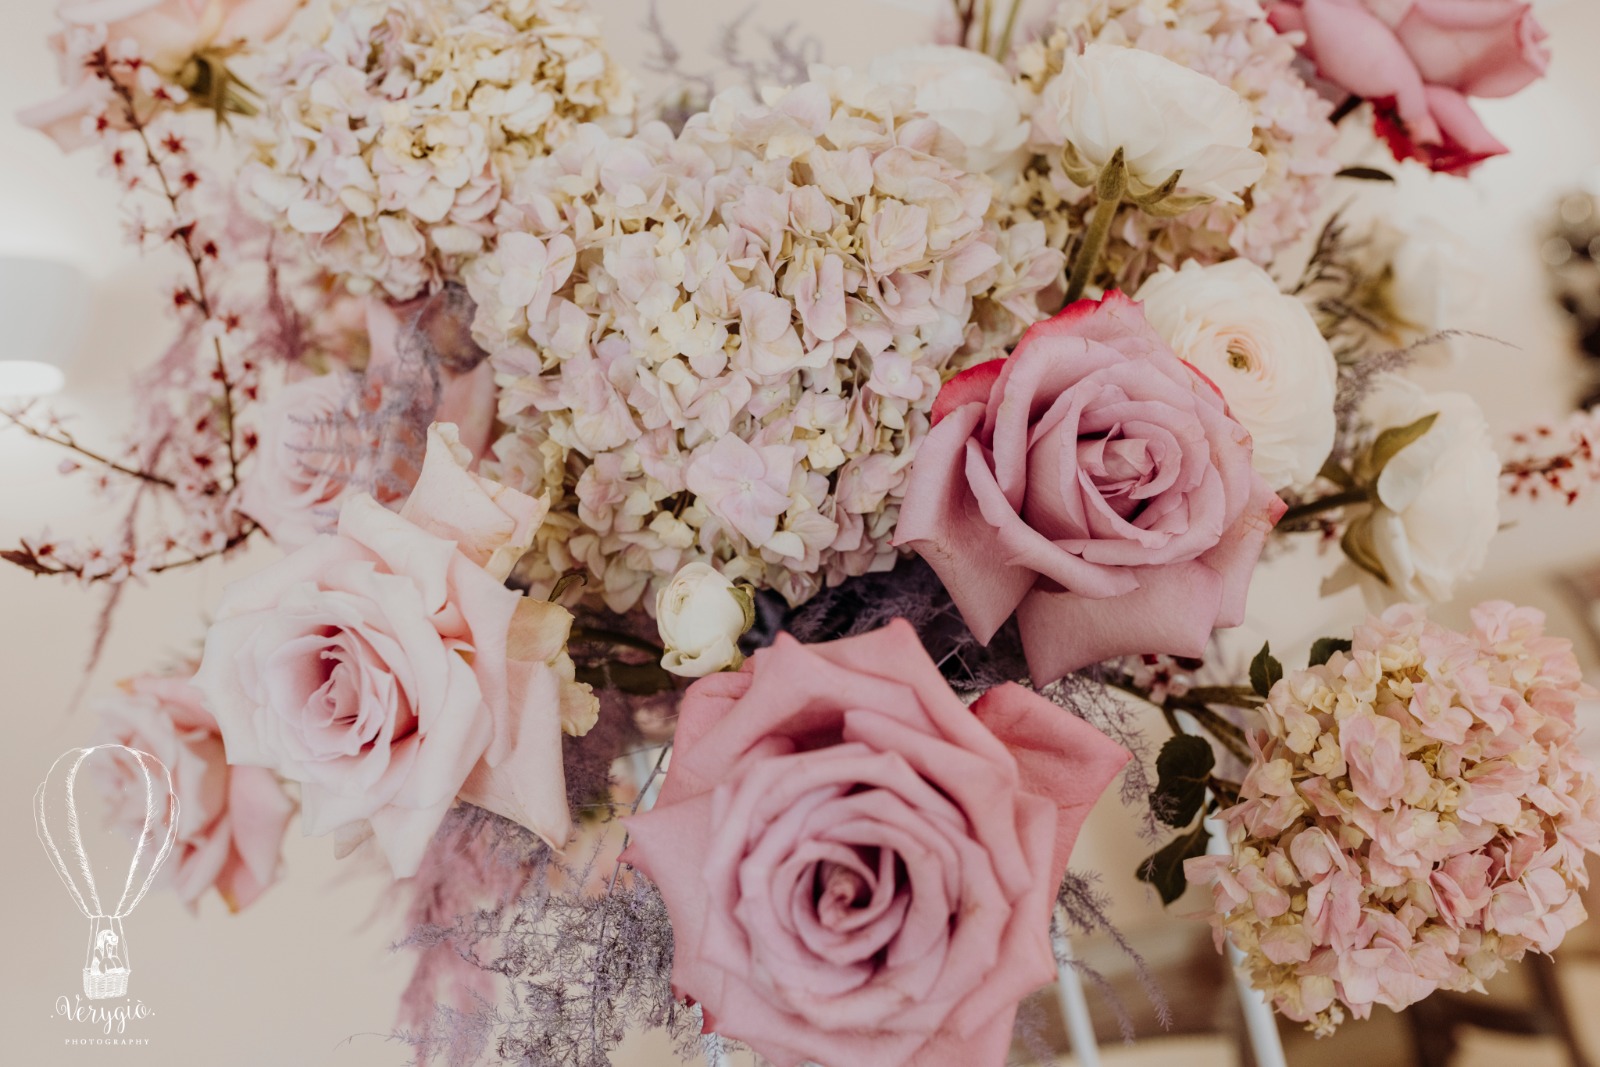 Composizione floreale con ortensie rosa antico e rose rosa